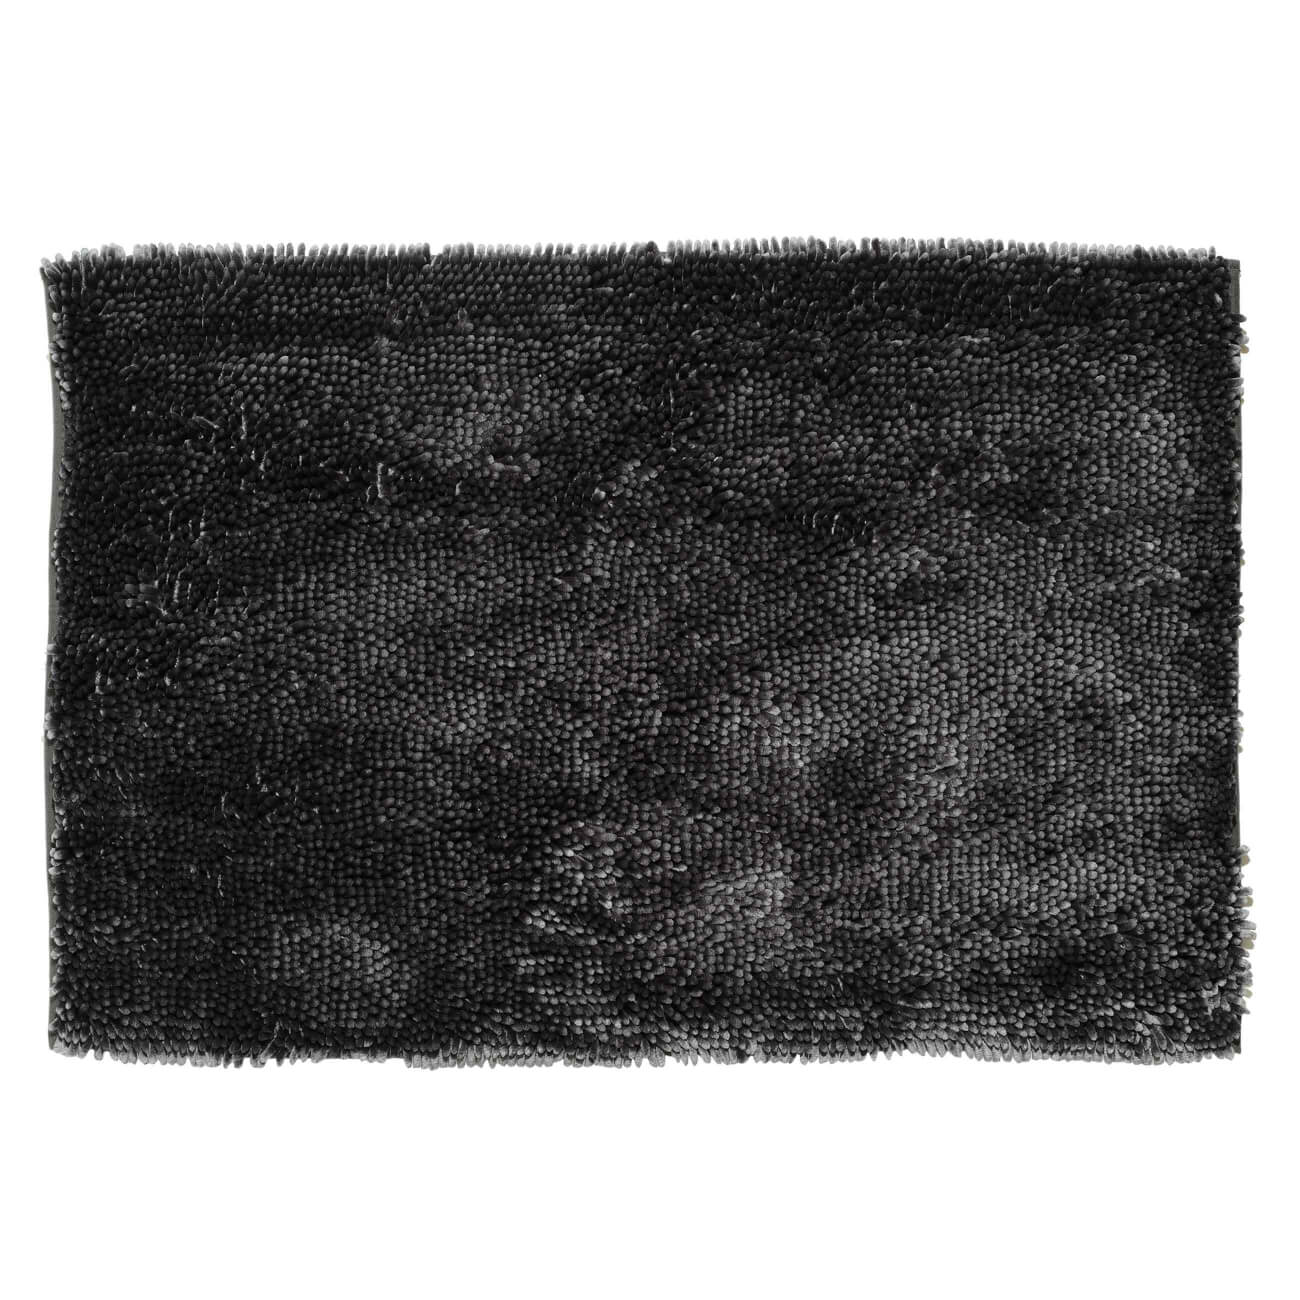 Коврик, 65х100 см, противоскользящий, полиэстер, темно-серый, Fluffy коврик под миску и лоток